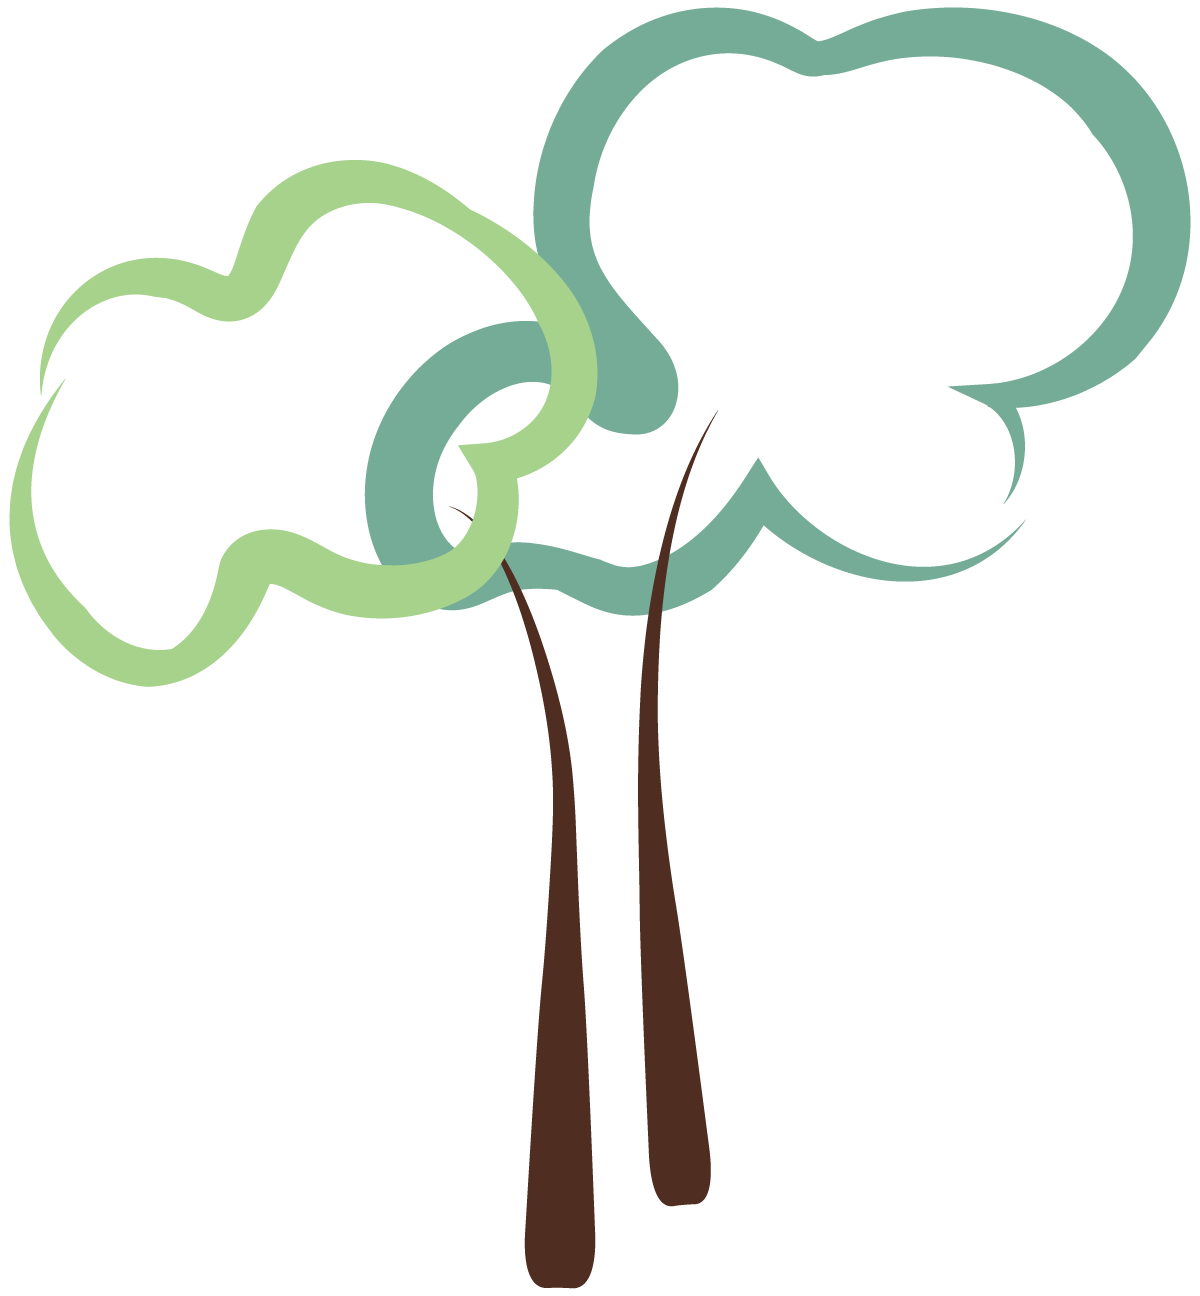 Tree emblem